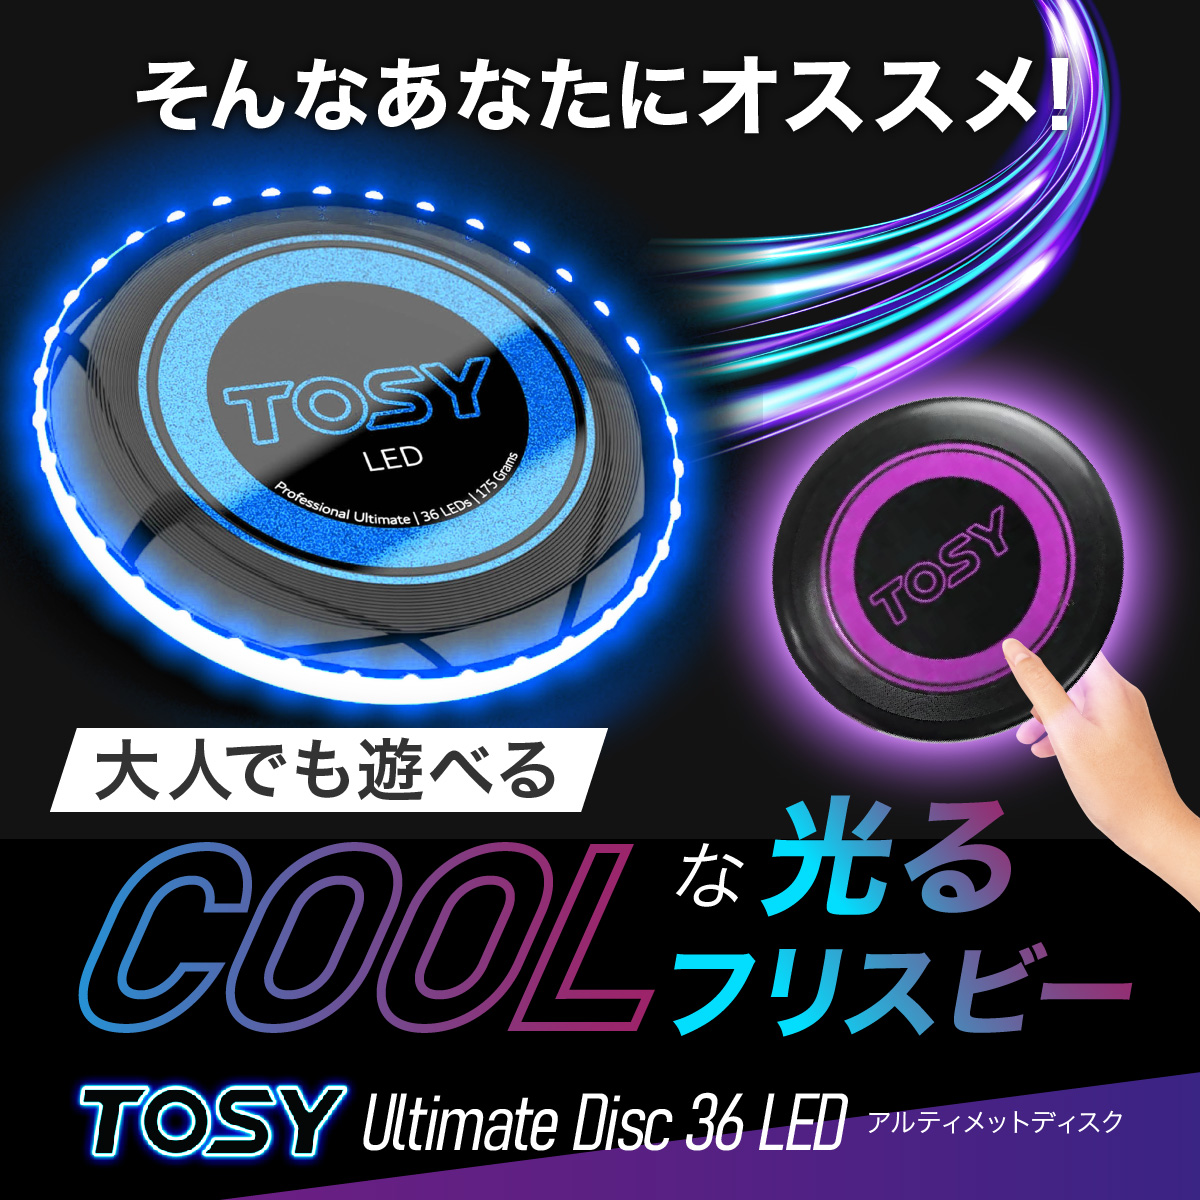 大人でも遊べるCoolな光るフリスビー TOSY Ultimate Disc 36 LED